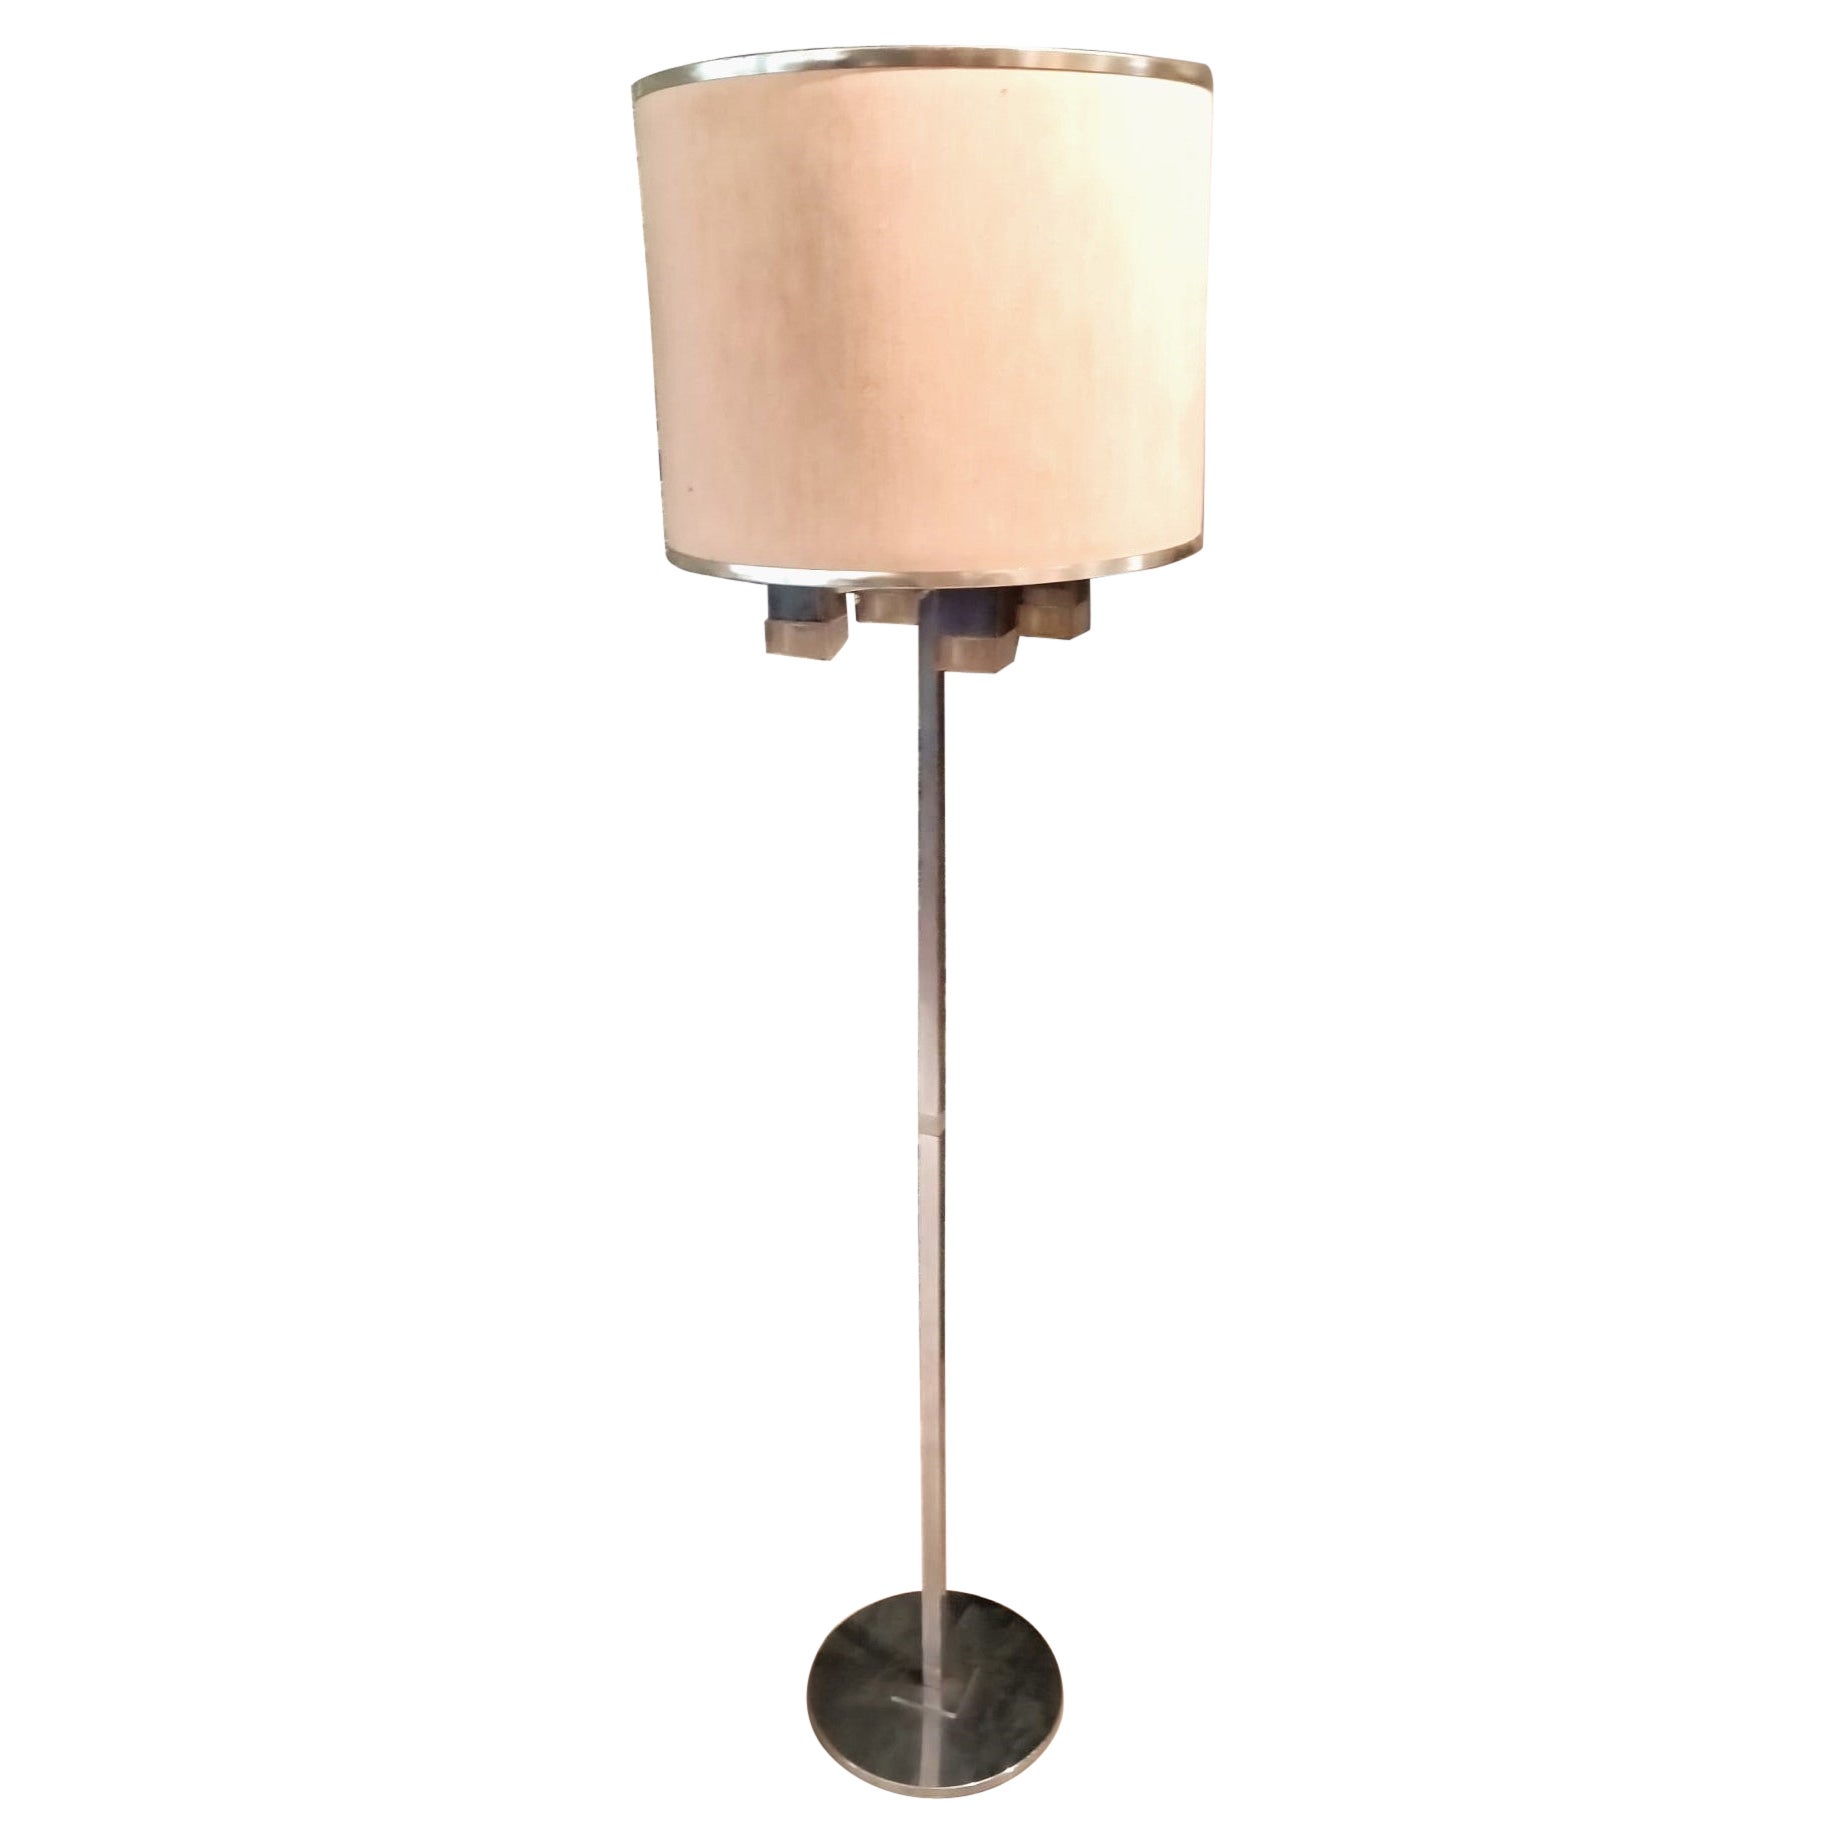 Floor lamp by Sciolari For Sale